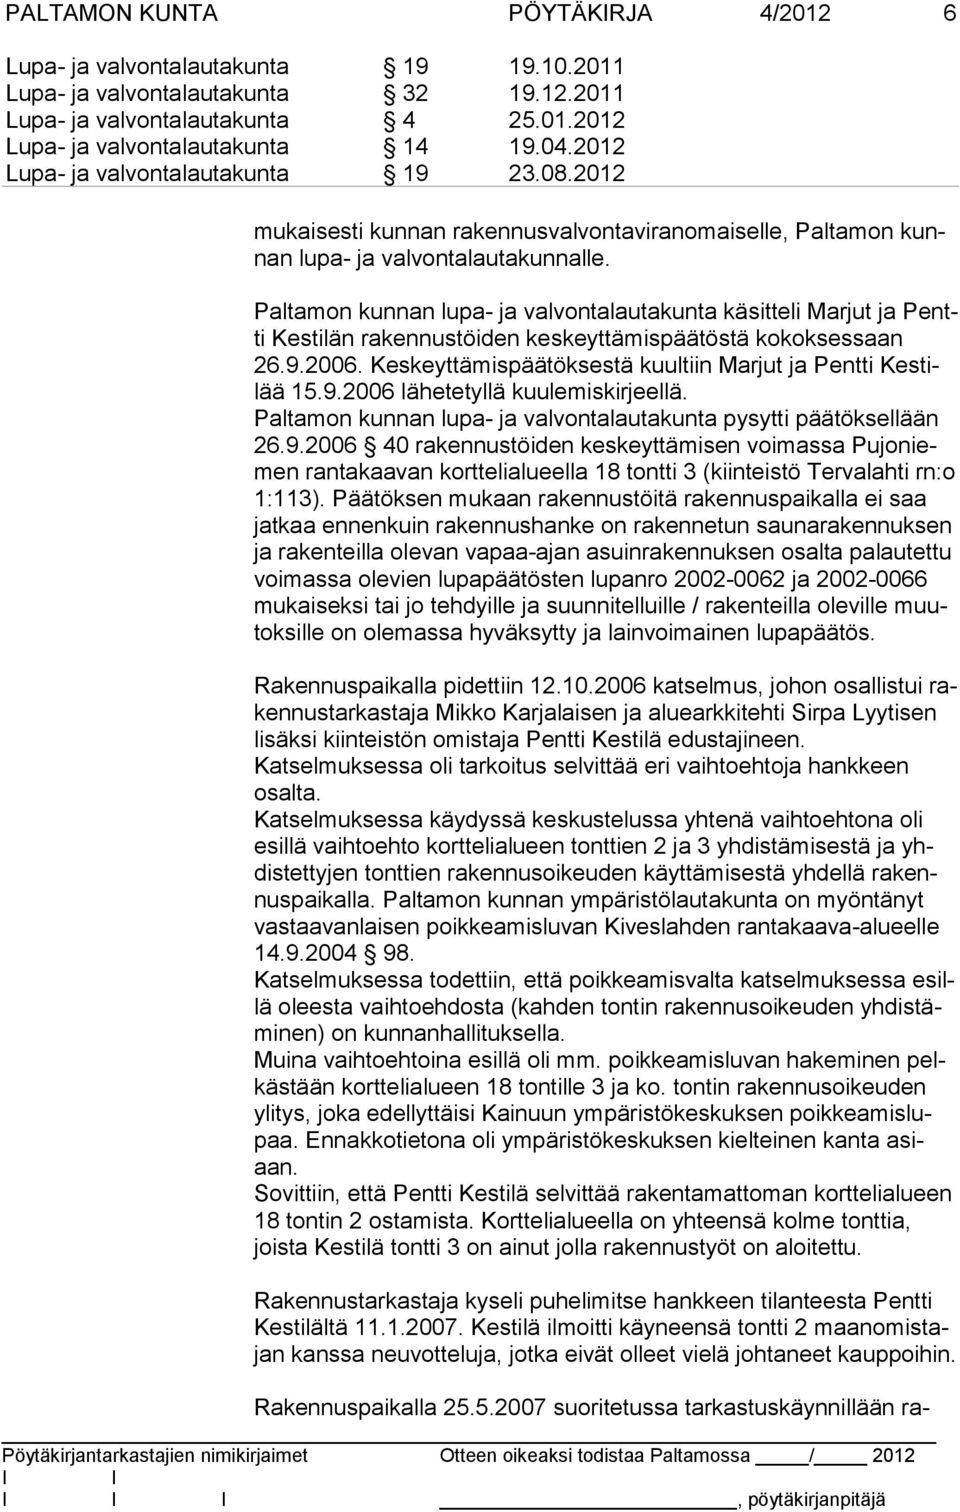 Keskeyttämispäätöksestä kuultiin Marjut ja Pentti Kestilää 15.9.2006 lähetetyllä kuulemiskirjeellä. Paltamon kunnan lupa- ja valvontalautakunta pysytti päätöksellään 26.9.2006 40 rakennustöiden keskeyttämisen voimassa Pujoniemen rantakaavan korttelialueella 18 tontti 3 (kiinteistö Tervalahti rn:o 1:113).